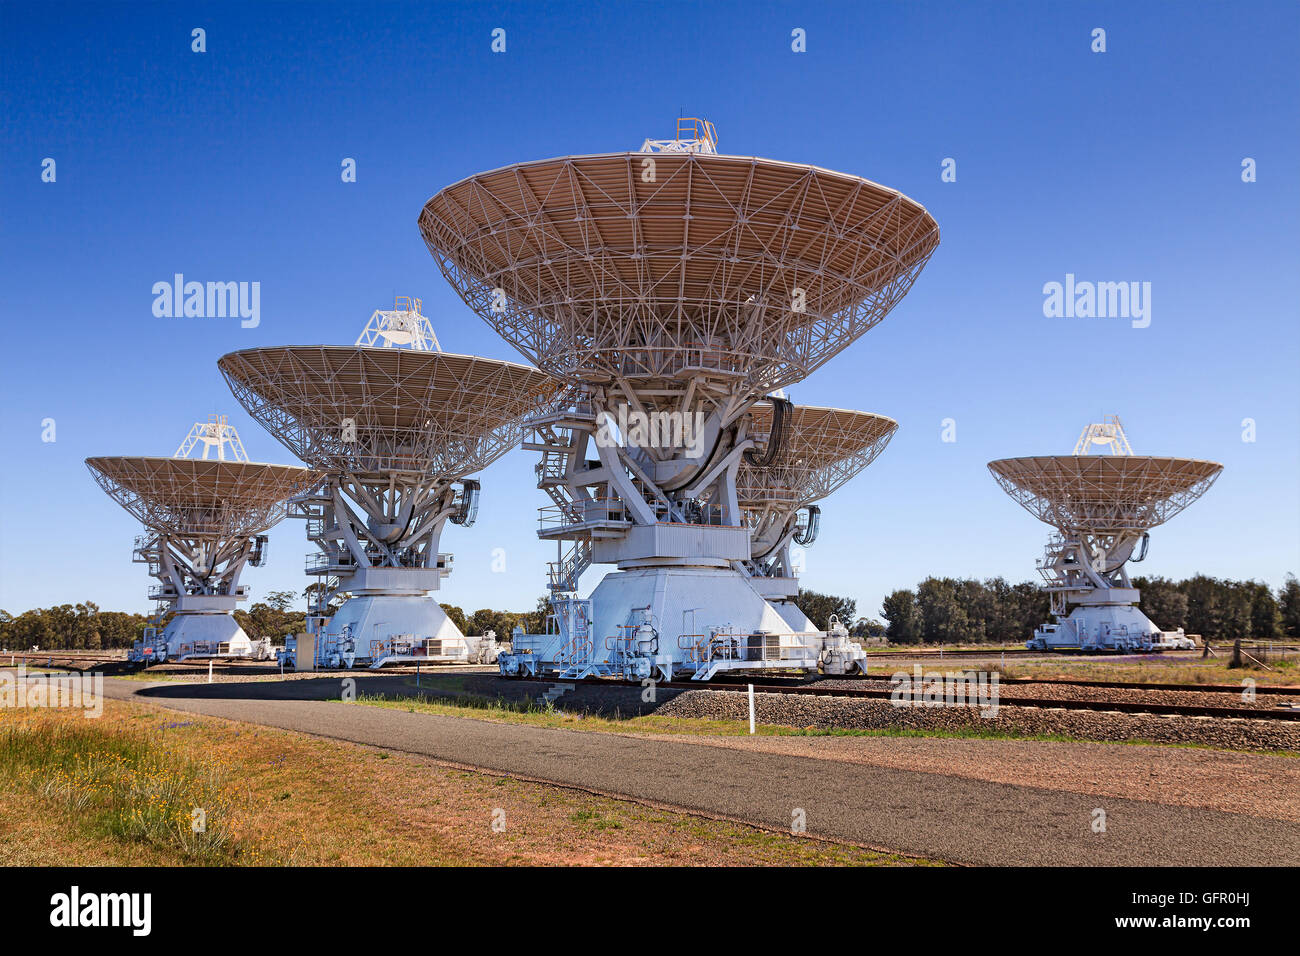 kompakte australische Deep Space Radio Antennen-Array von 5 Gerichten  montiert auf Bahnsteige Himmel zu beobachten. Wissenschaft-Technologie  Stockfotografie - Alamy